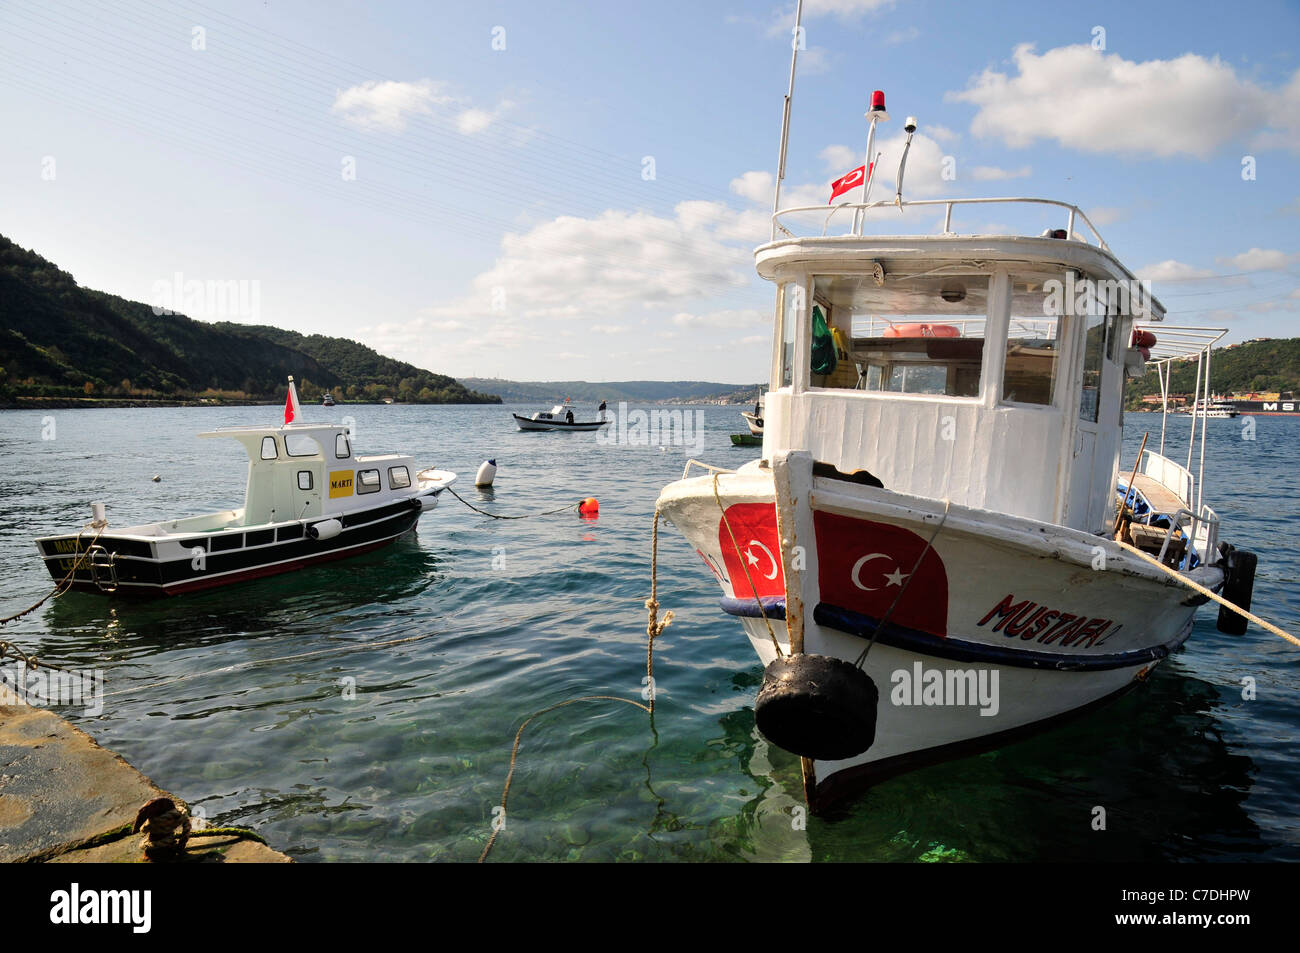 L'Anadolu Kavagi quay, petit village touristique et de pêche dans le détroit du Bosphore près de la mer Noire. La Turquie. Banque D'Images